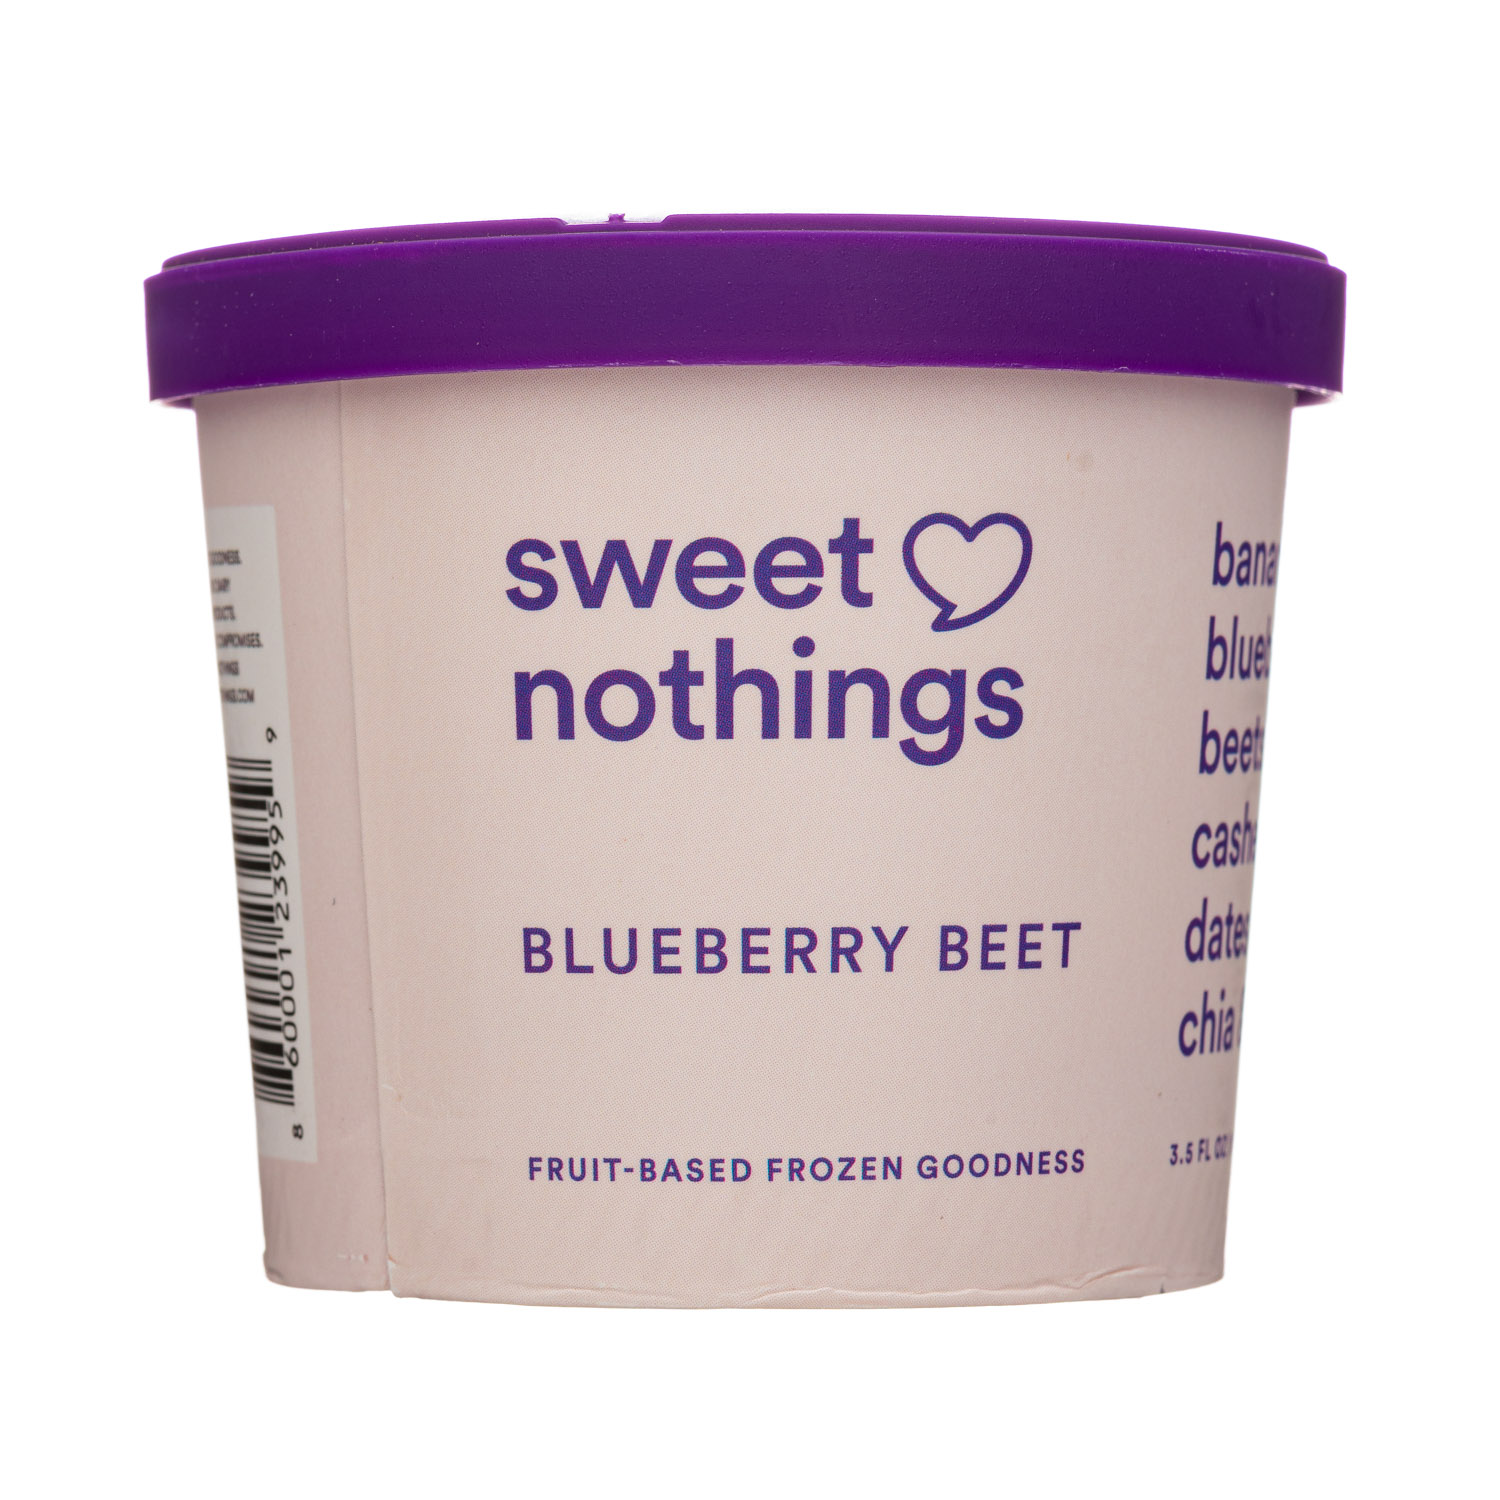 https://images.nosh.com/brands/265667708.sweetnothings-4oz-frozenfruit-bluebbeet.jpg